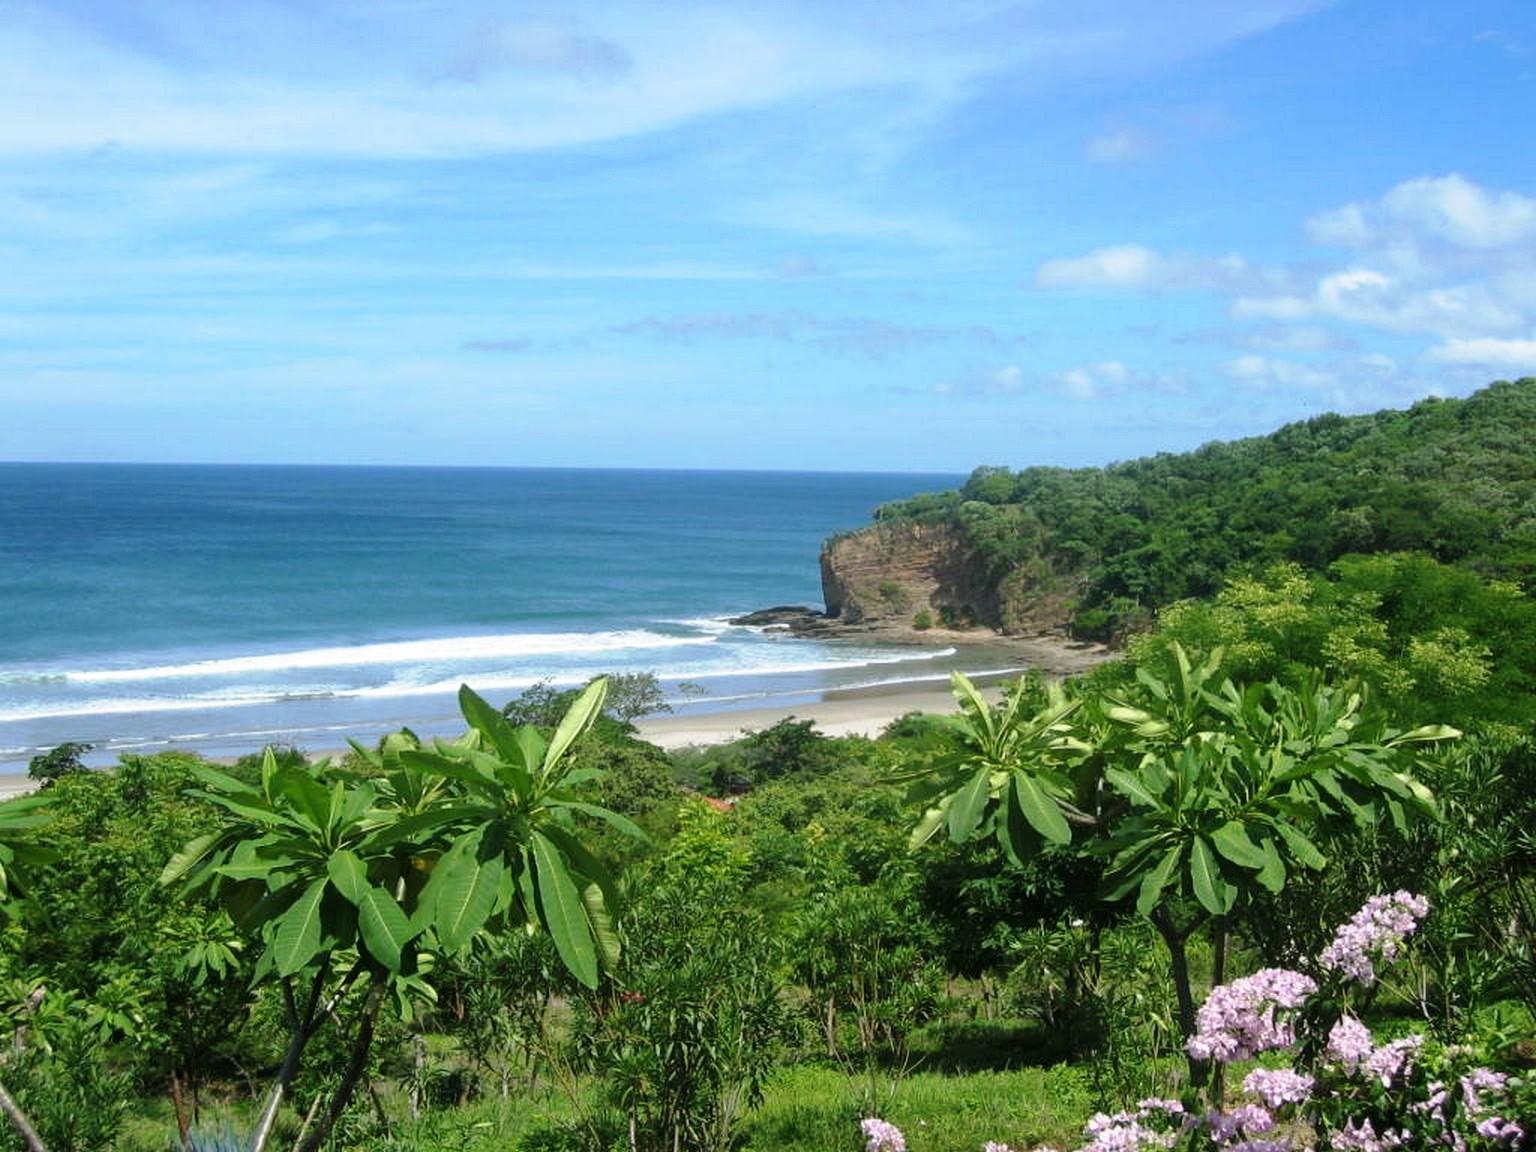 Nicaragua seaside